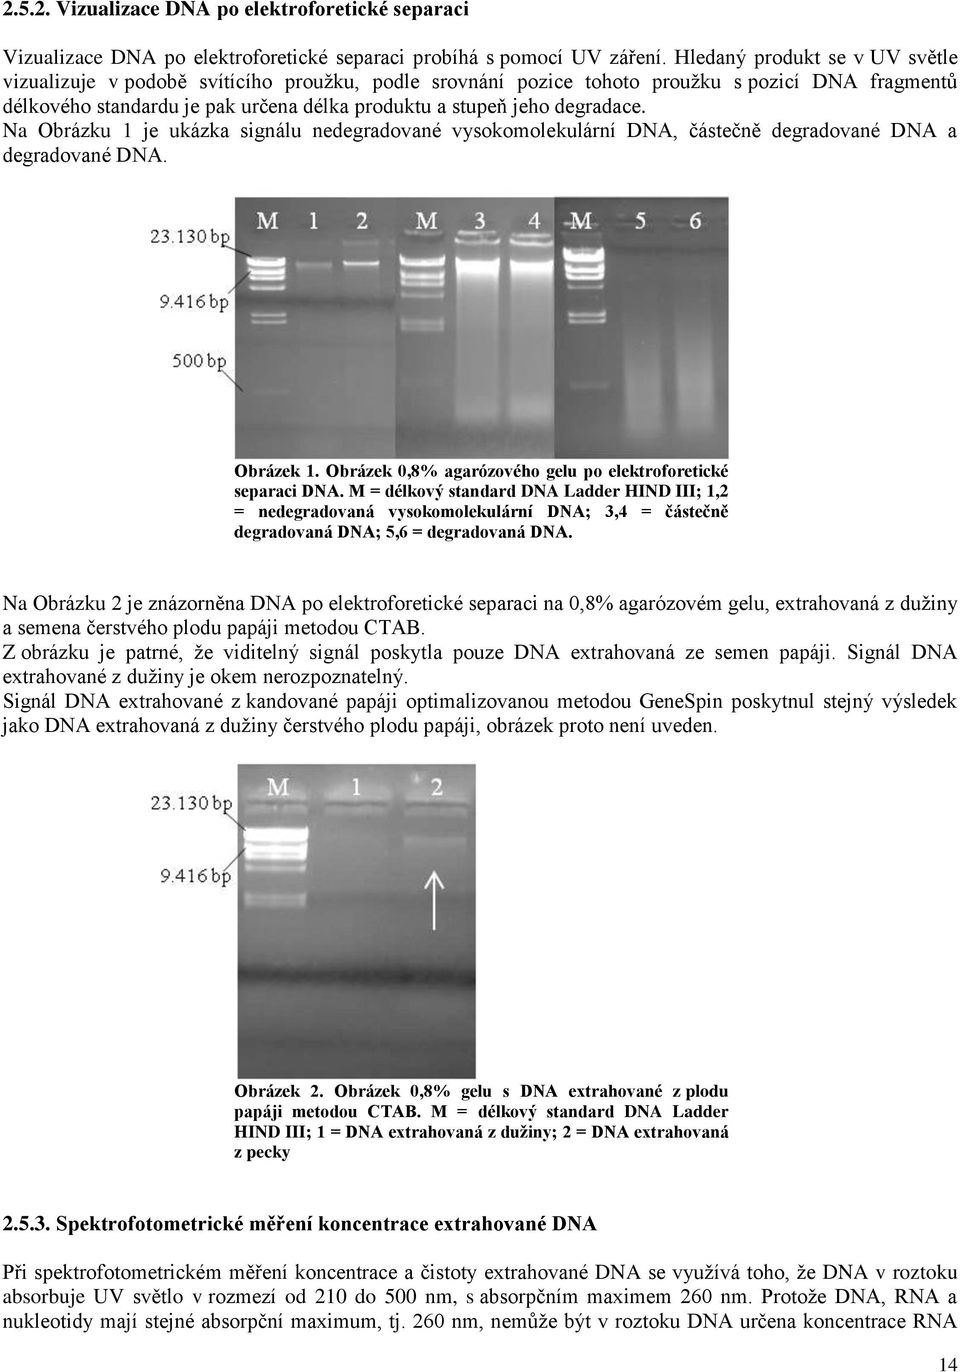 degradace. Na Obrázku 1 je ukázka signálu nedegradované vysokomolekulární DNA, částečně degradované DNA a degradované DNA. Obrázek 1. Obrázek 0,8% agarózového gelu po elektroforetické separaci DNA.